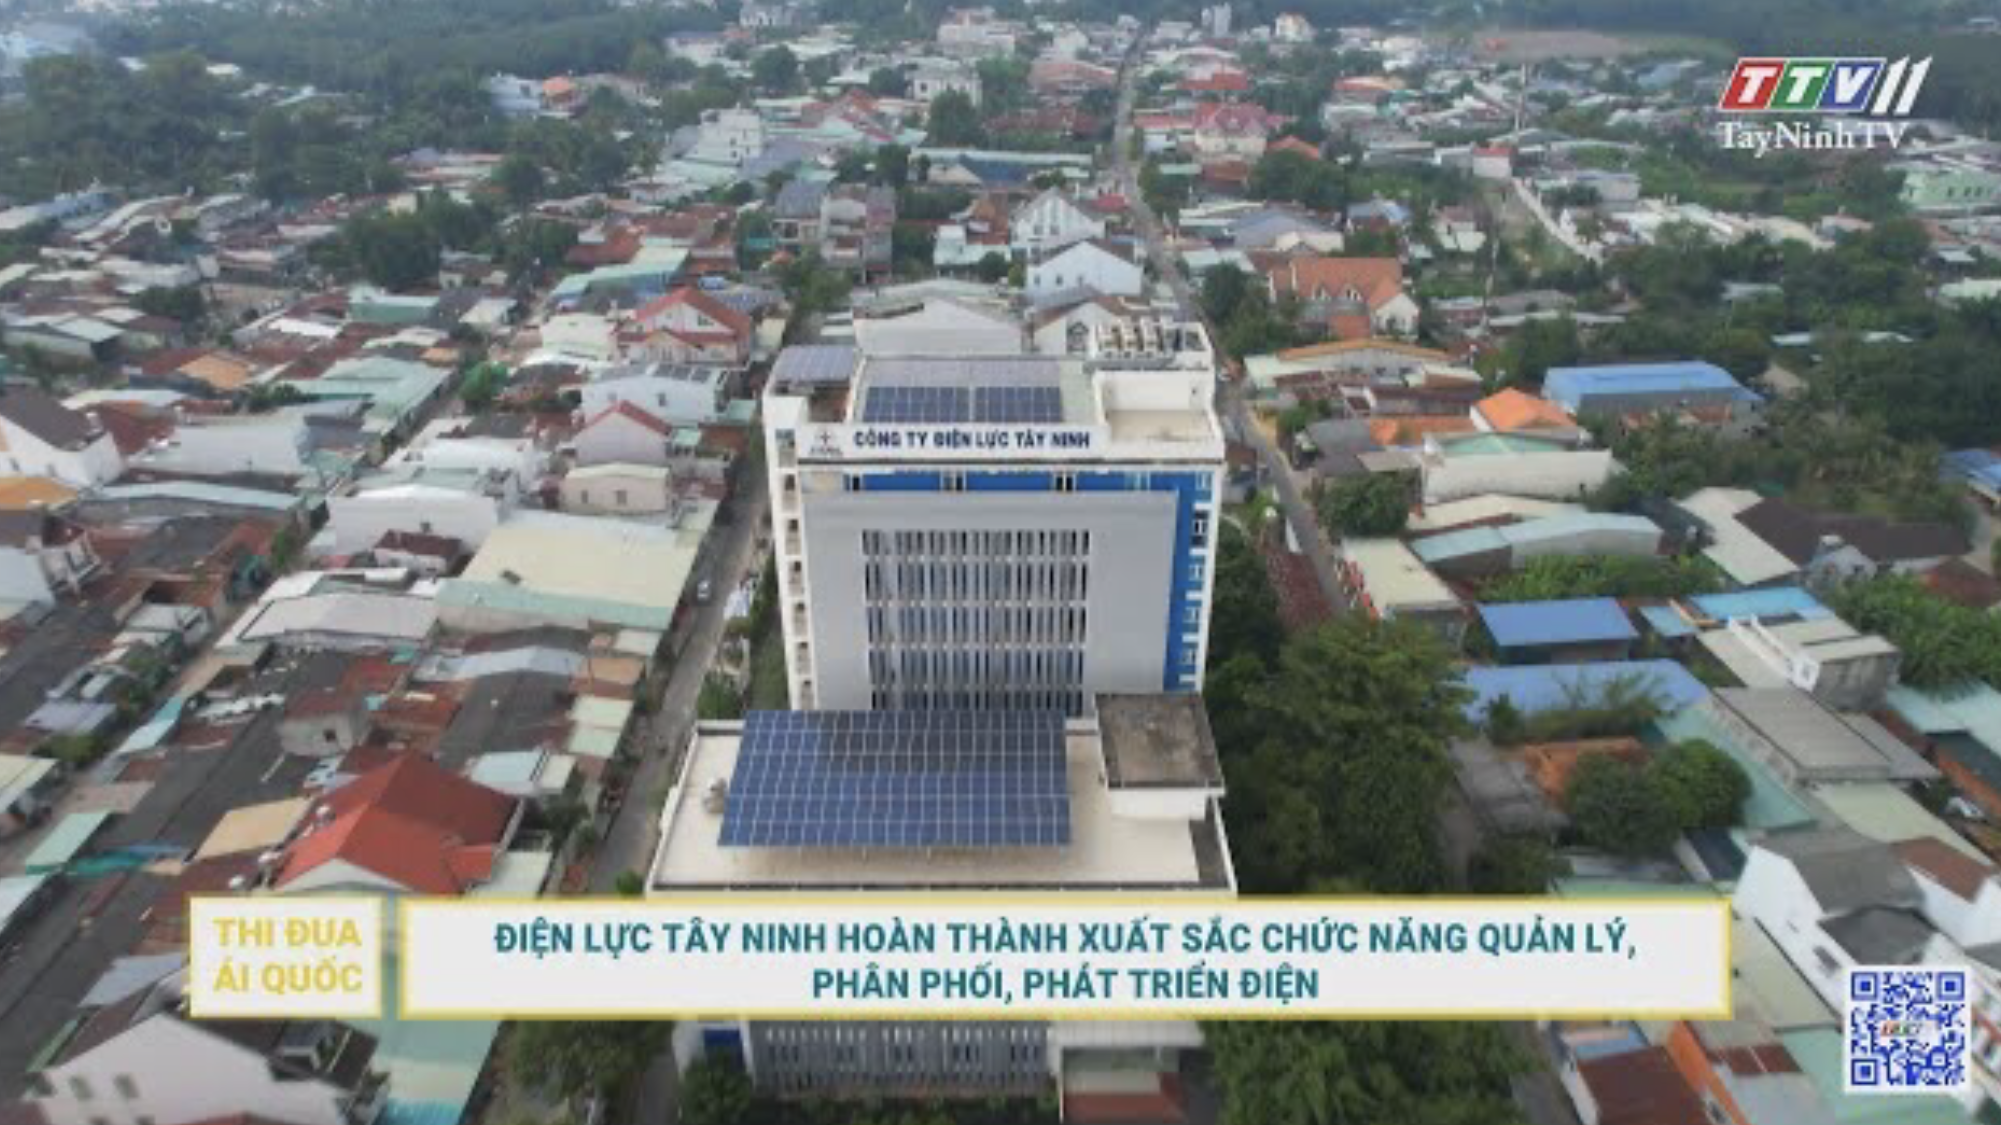 Điện lực Tây Ninh hoàn thành xuất sắc chức năng quản lý, phân phối, phát triển điện | TayNinhTV